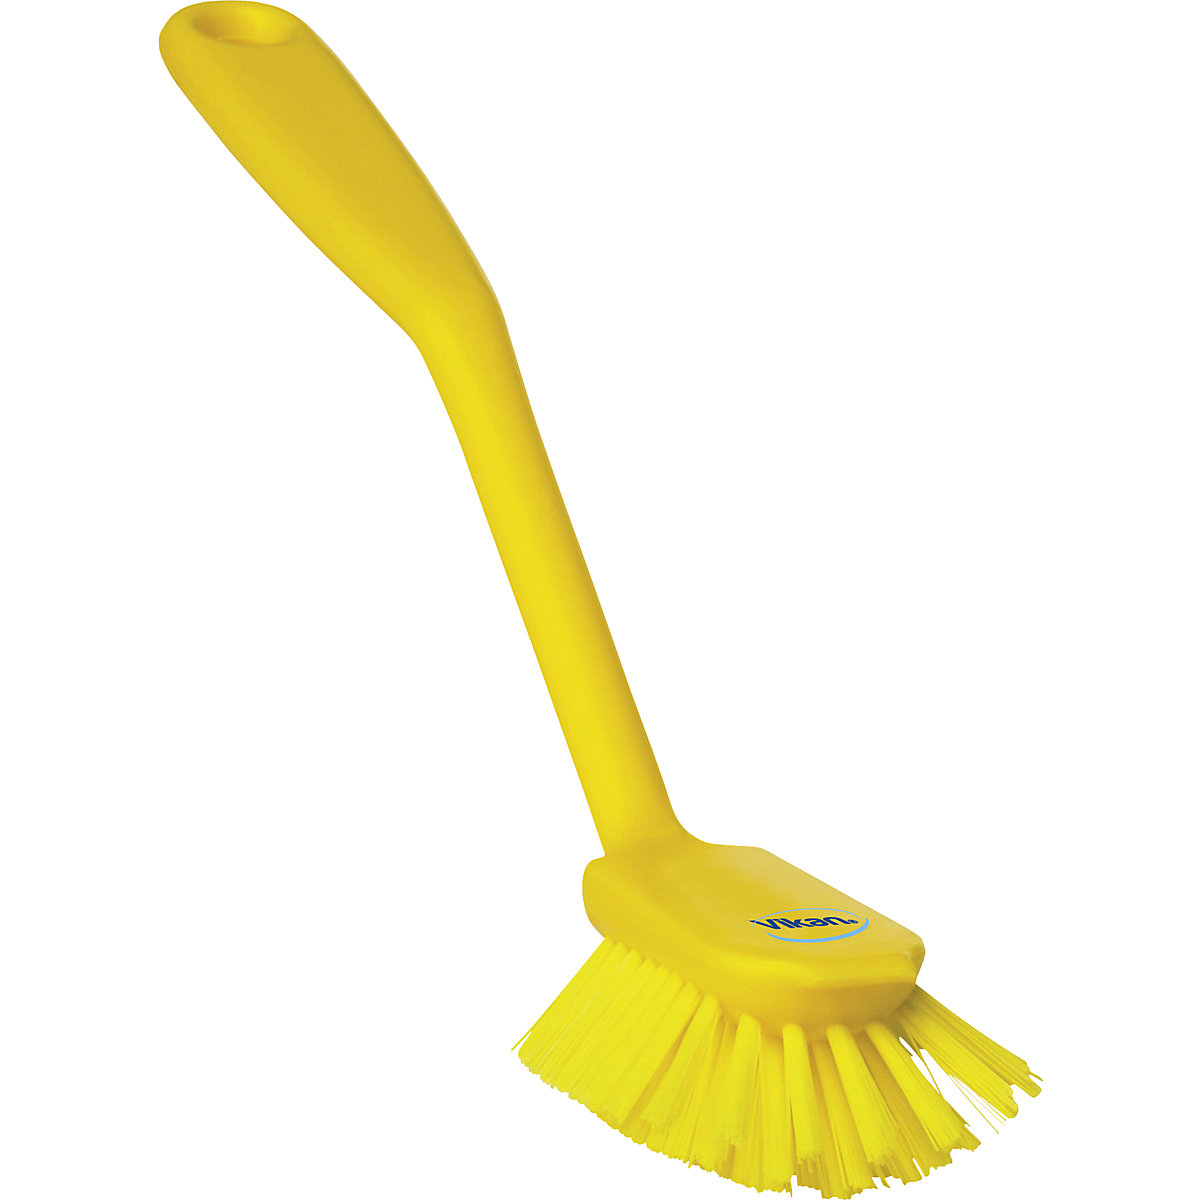 Scrubbing brush with scraper edge – Vikan, medium, pack of 20, yellow